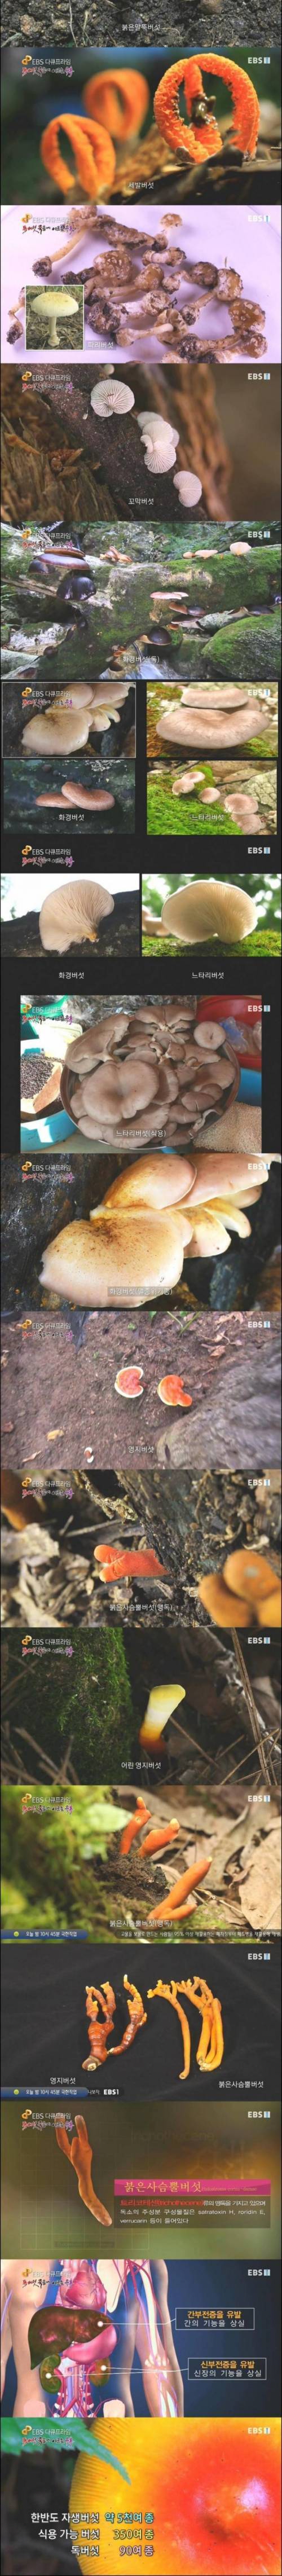 [스압] 식용버섯과 독버섯.jpg